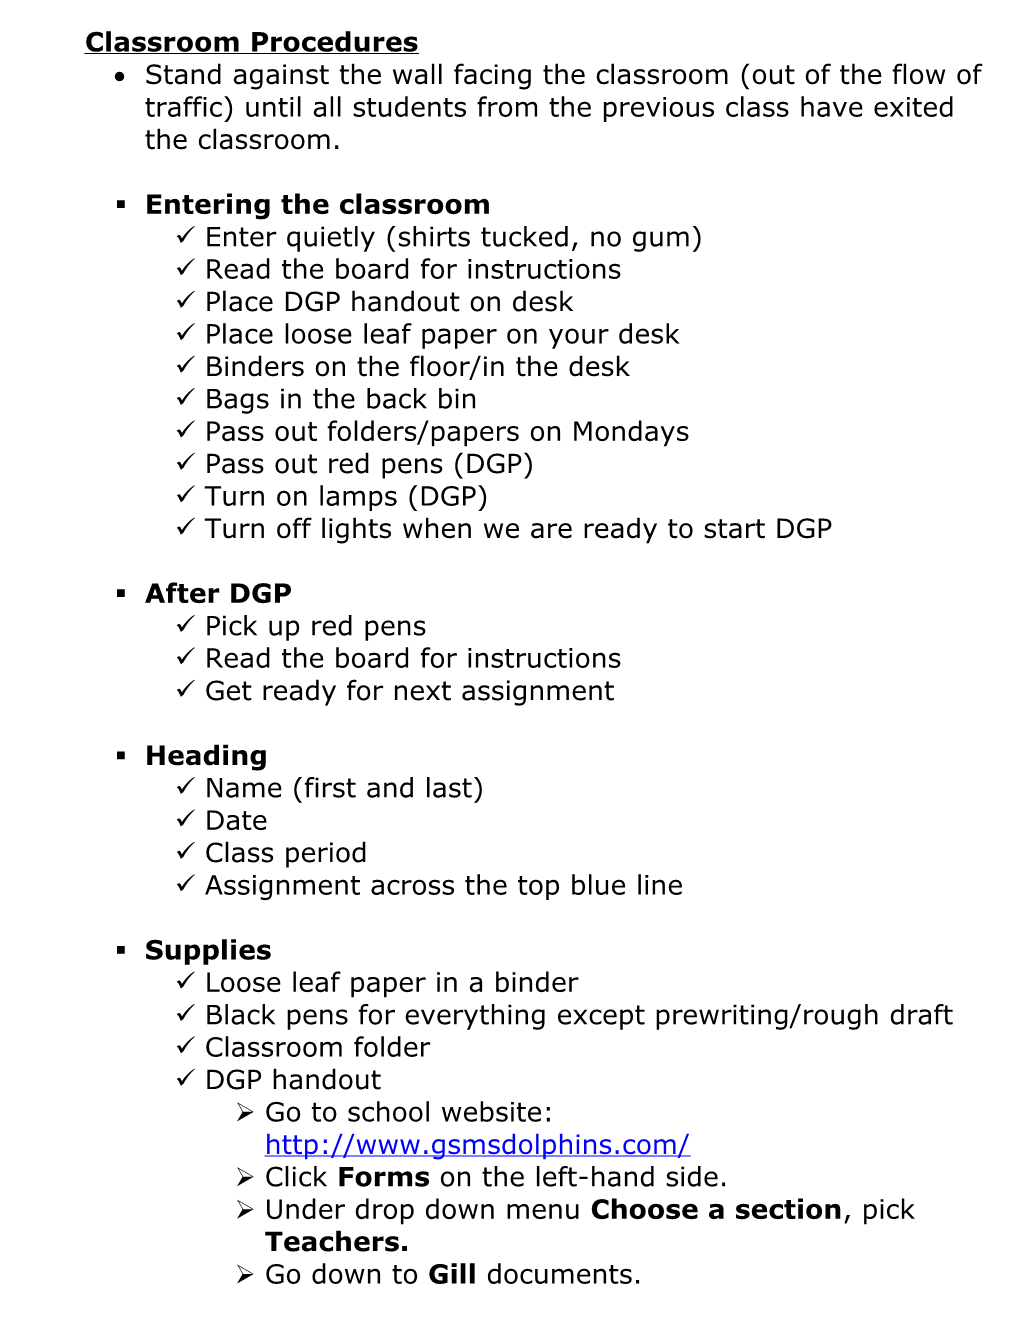 Classroom Procedures s1